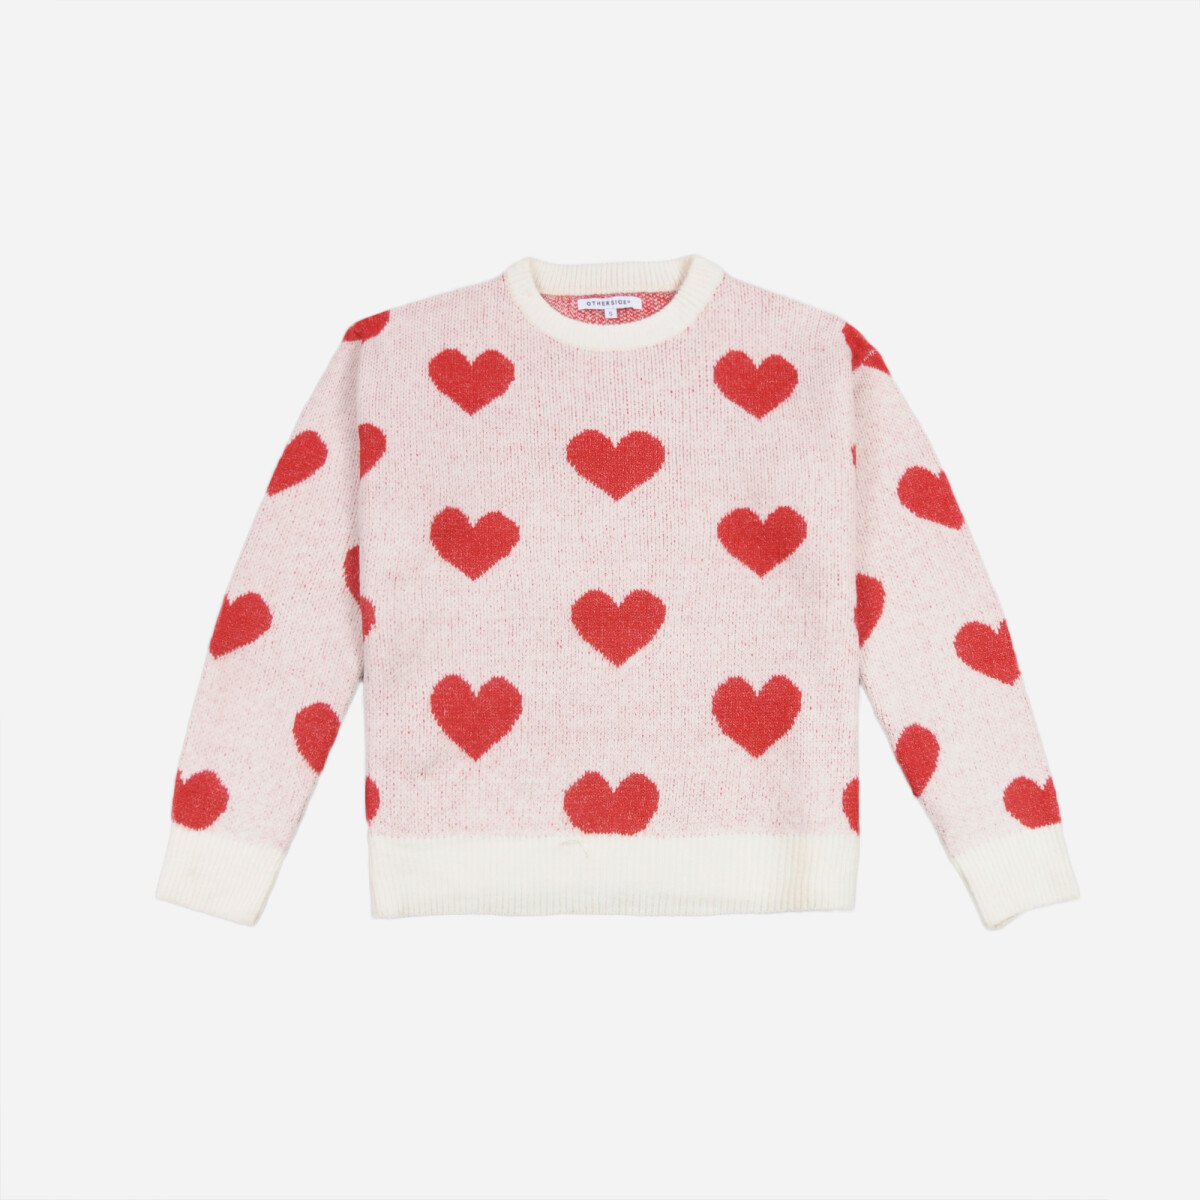 Sweater corazones - Mujer - BLANCO Y ROJO 